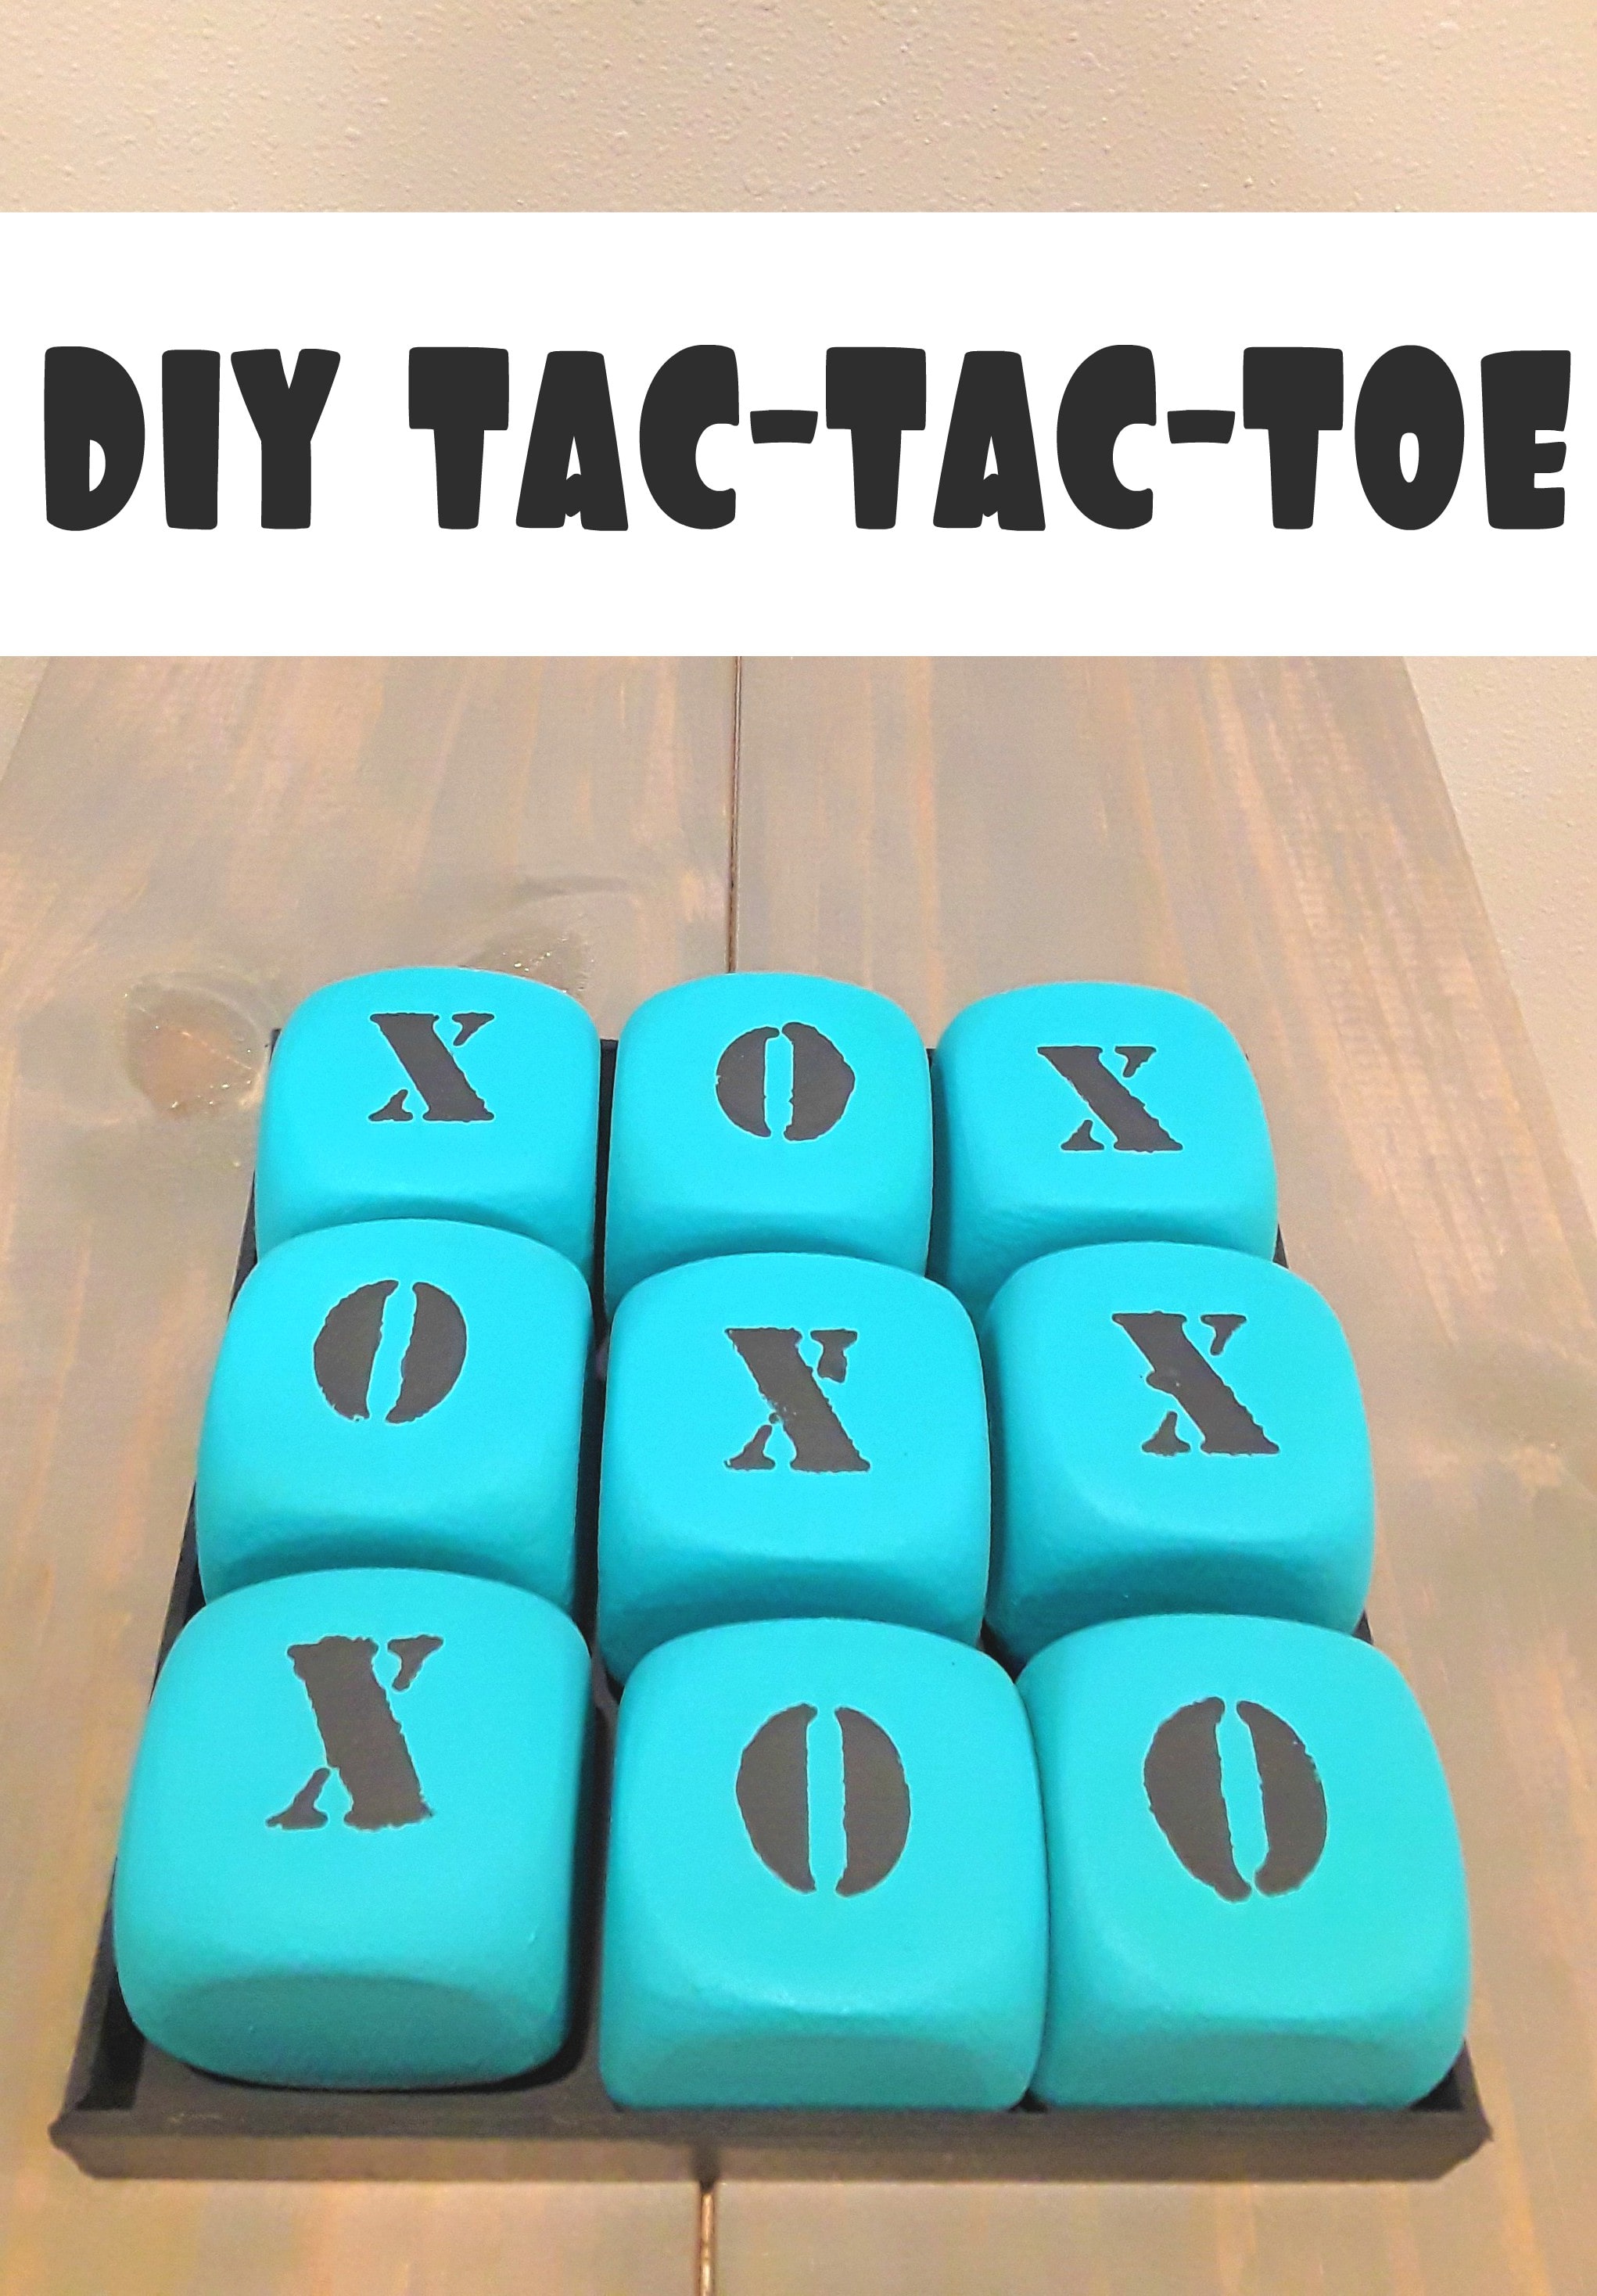 DIY Tic Tac Toe Game